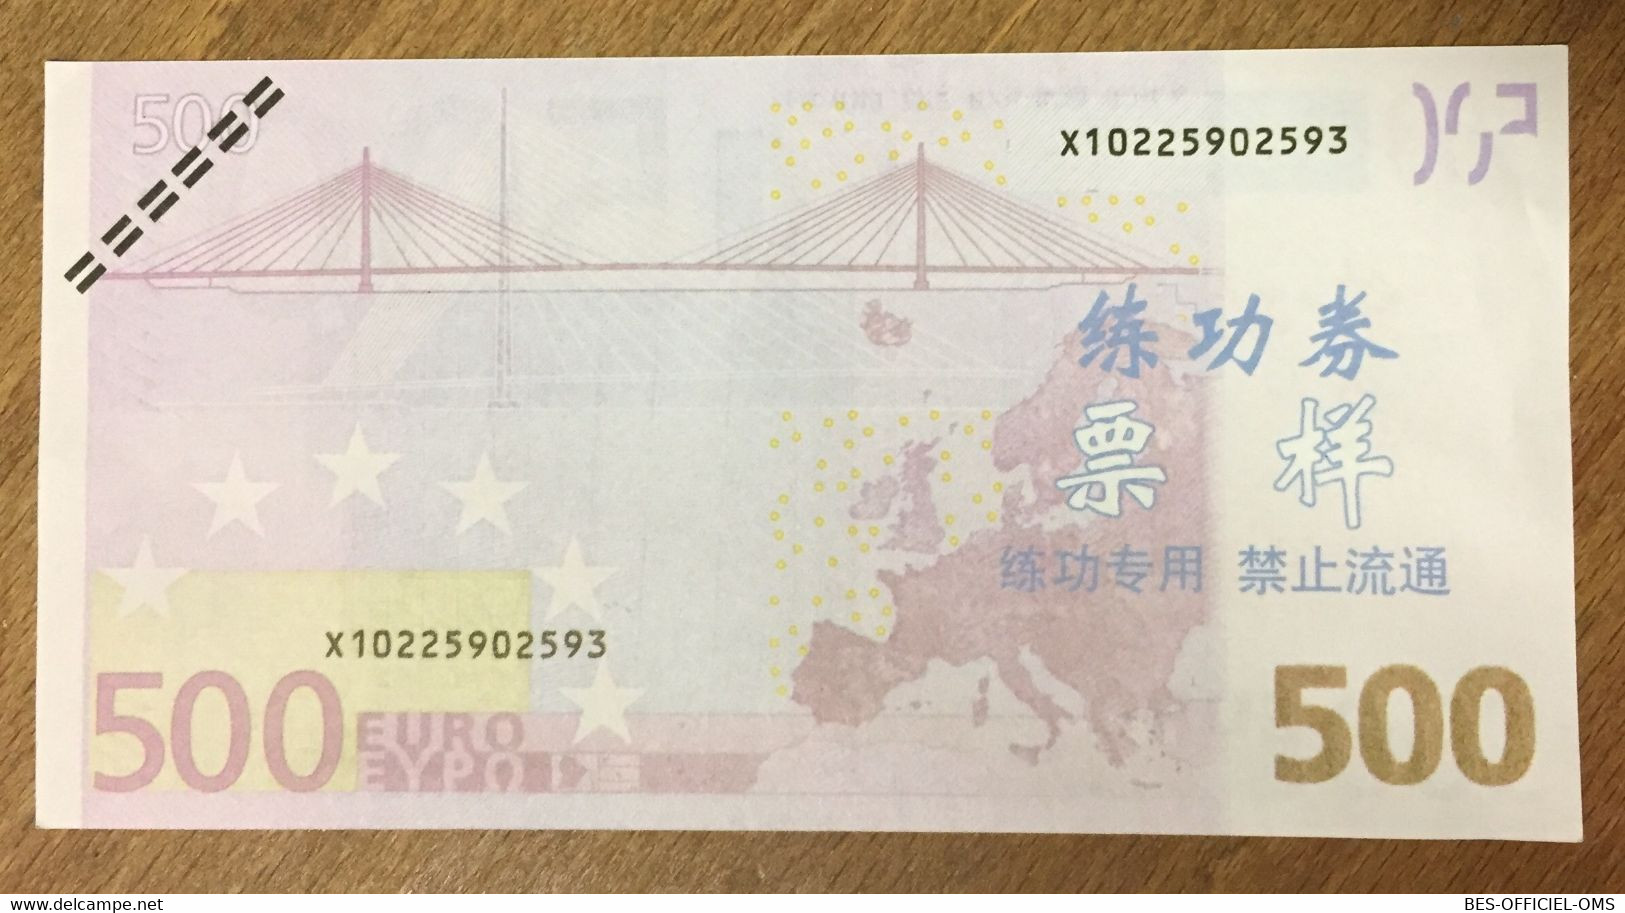 BILLET 500 EUROS FACTICE CHINOIS EURO SCHEIN PAPER MONEY BANKNOTE - 500 Euro